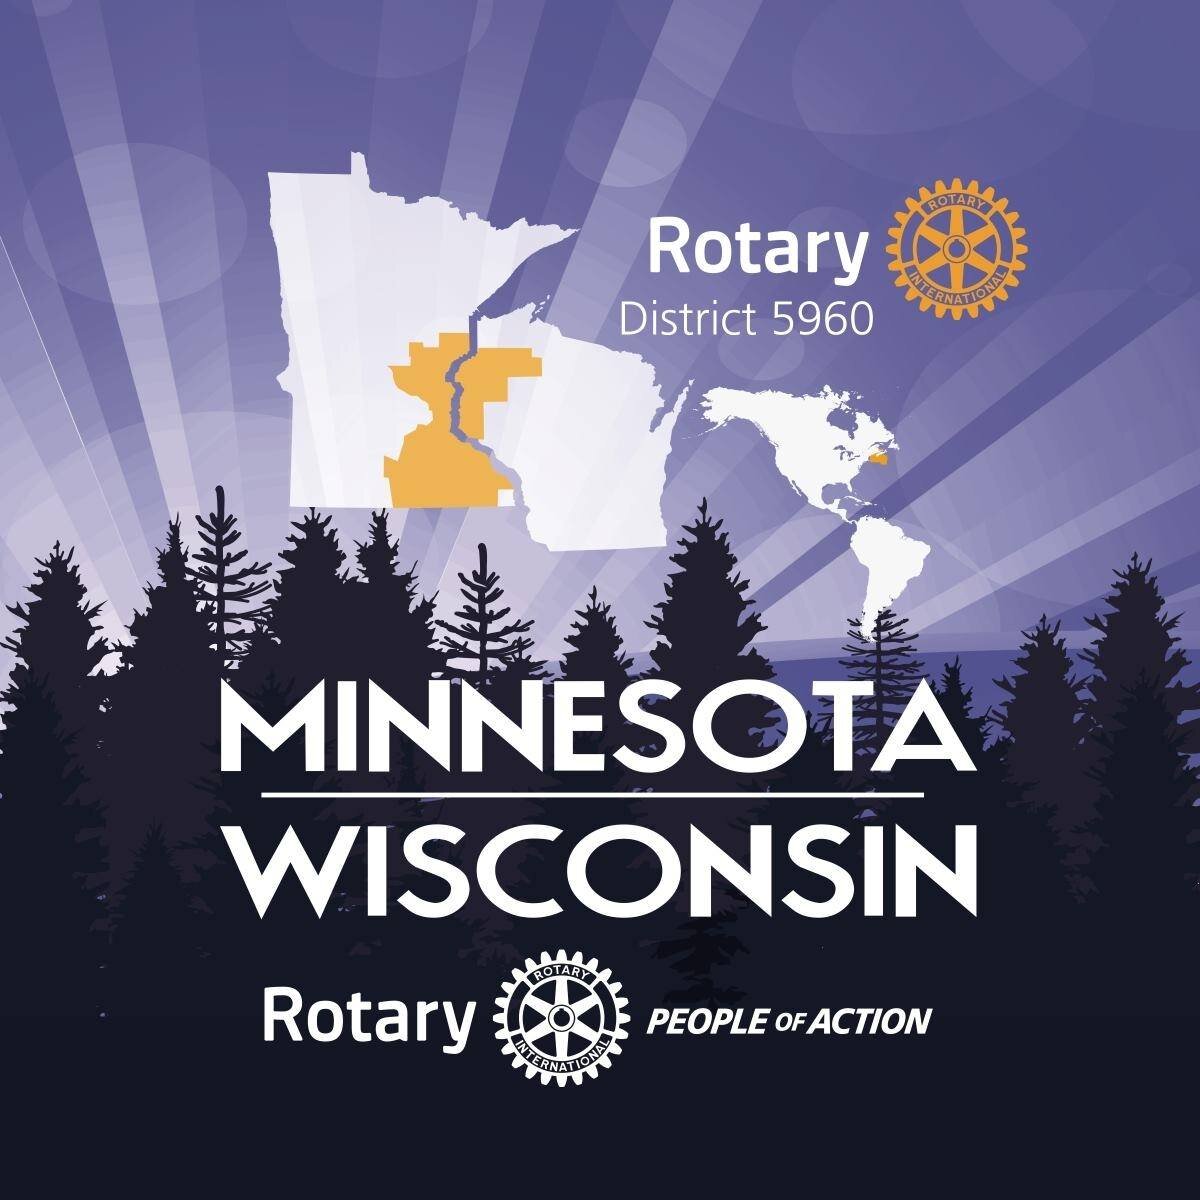 rotary Wisconsin Minnesota.jpg